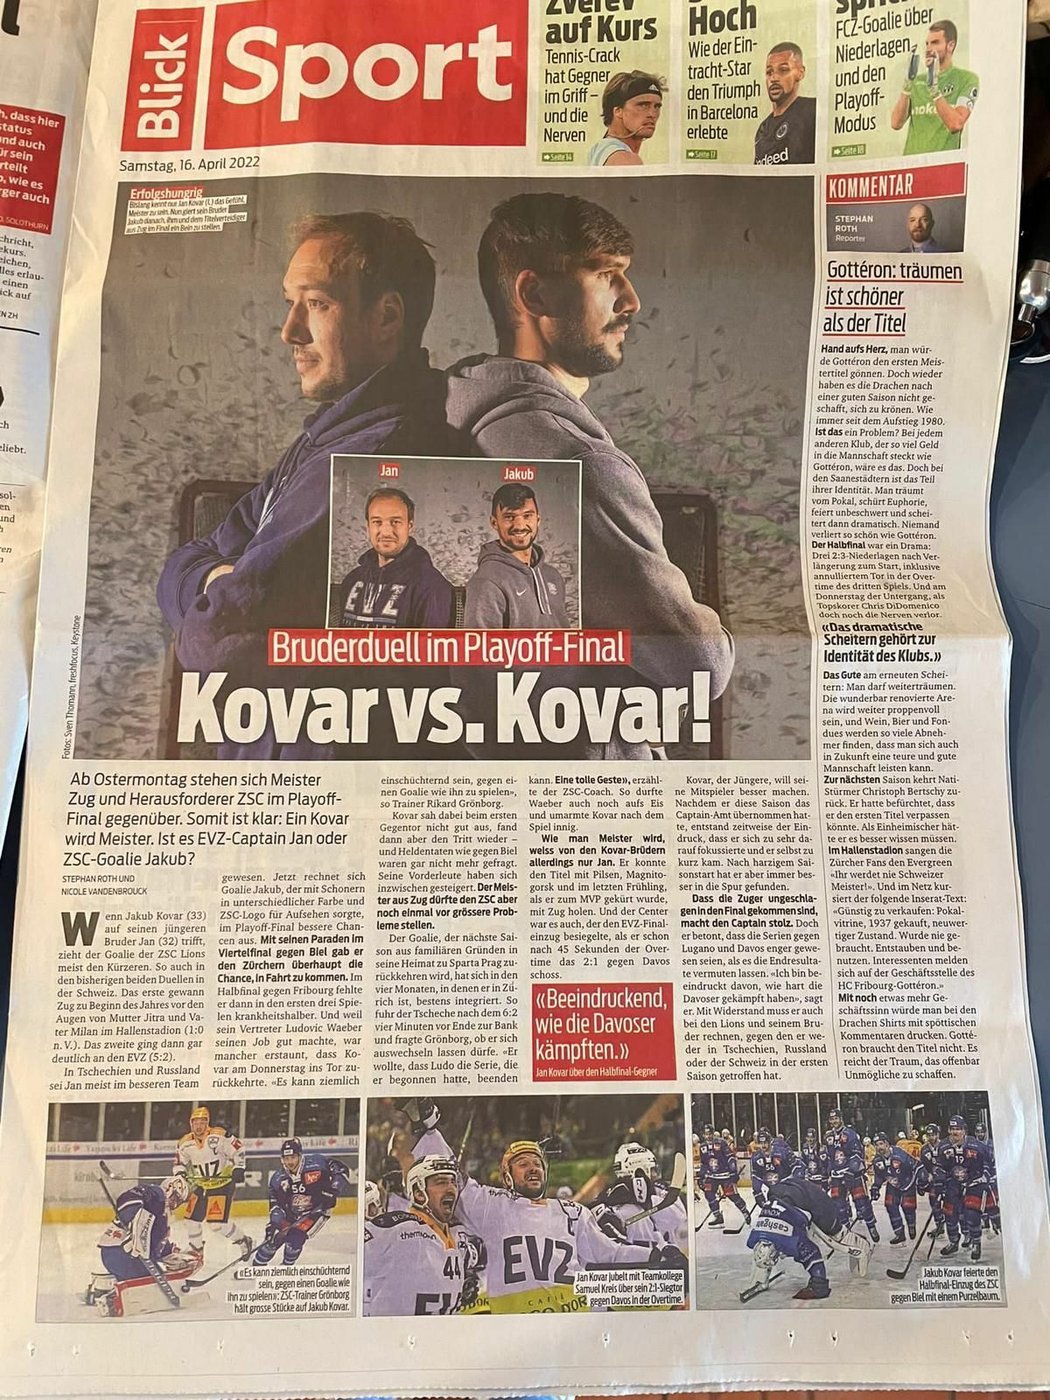 Souboj Jana (vlevo) a Jakuba Kováře ve finále play off švýcarské ligy strhl velkou pozornost